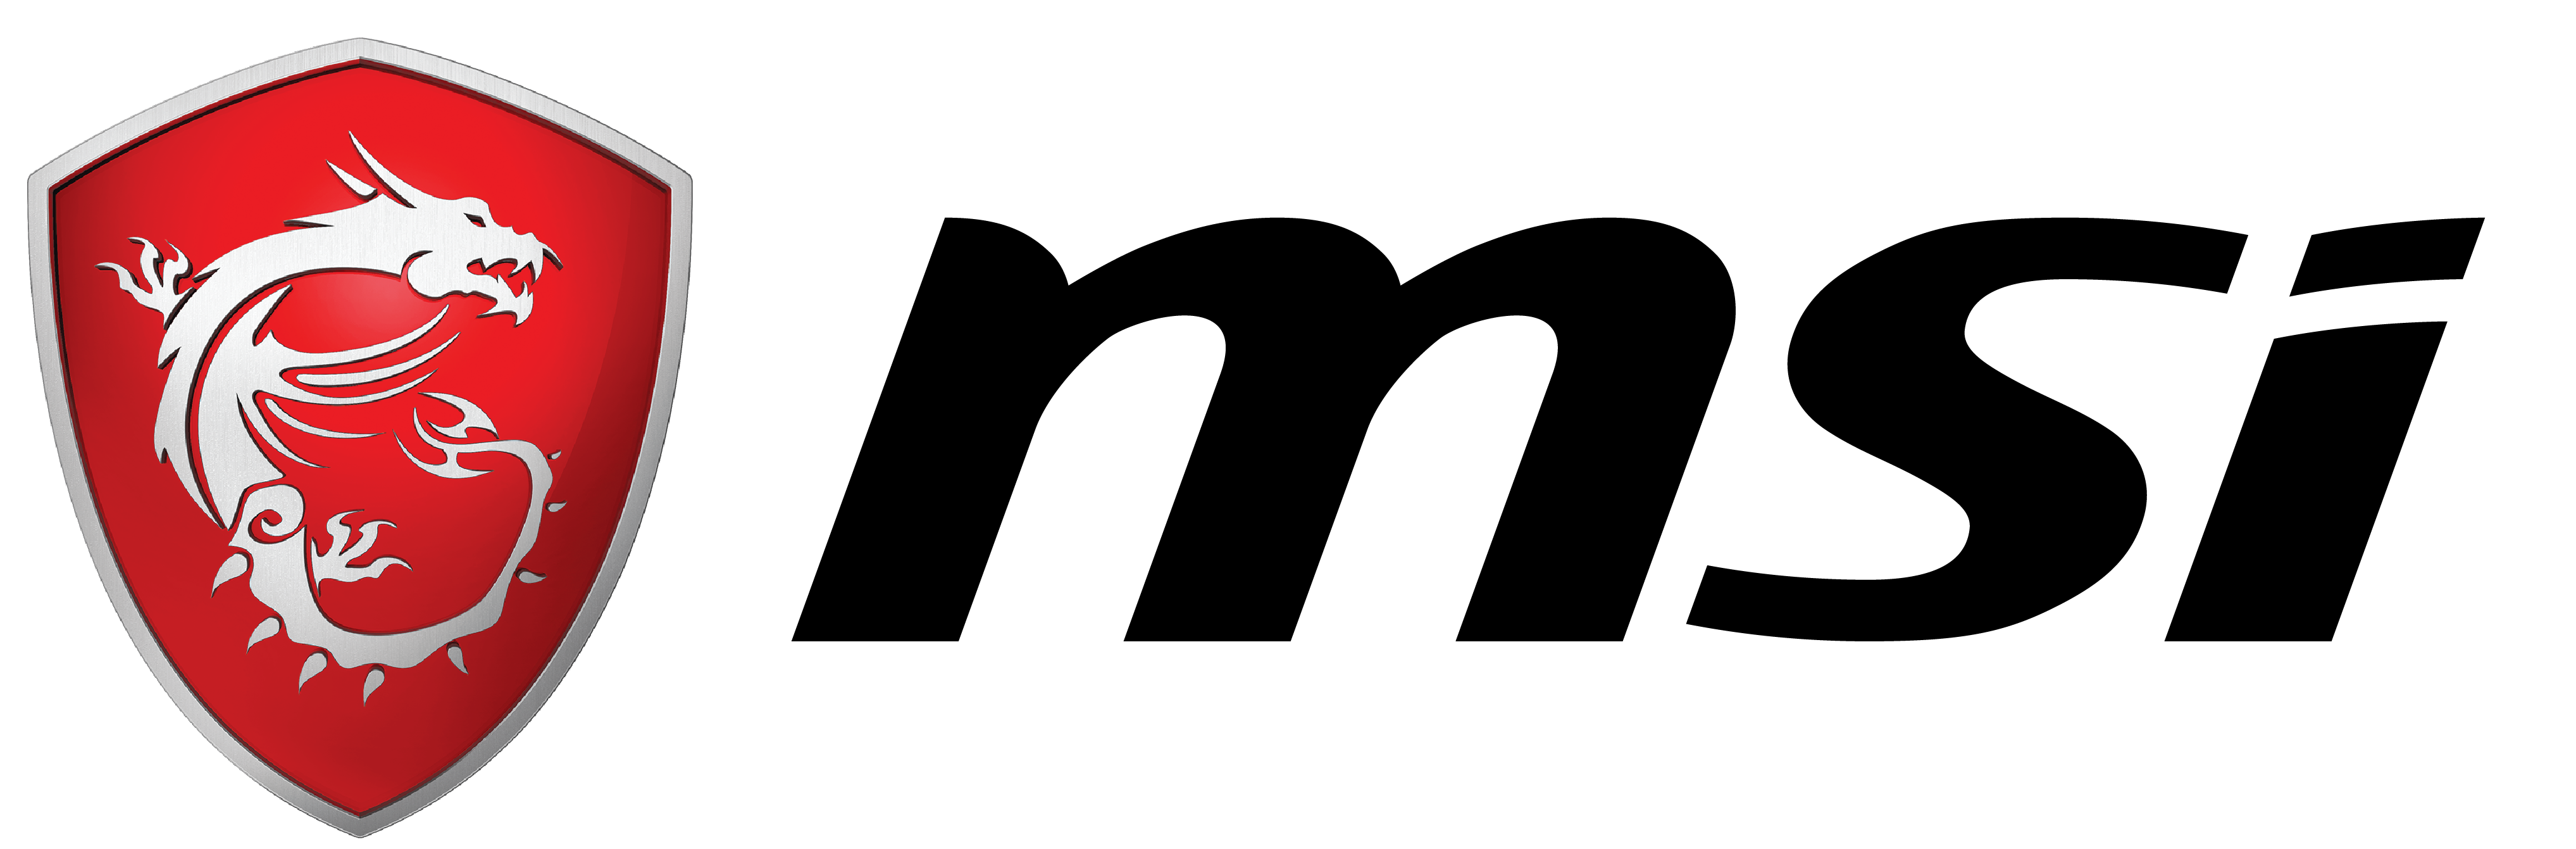 msi-gaming-logo-spirit-horizontal-black-rgb